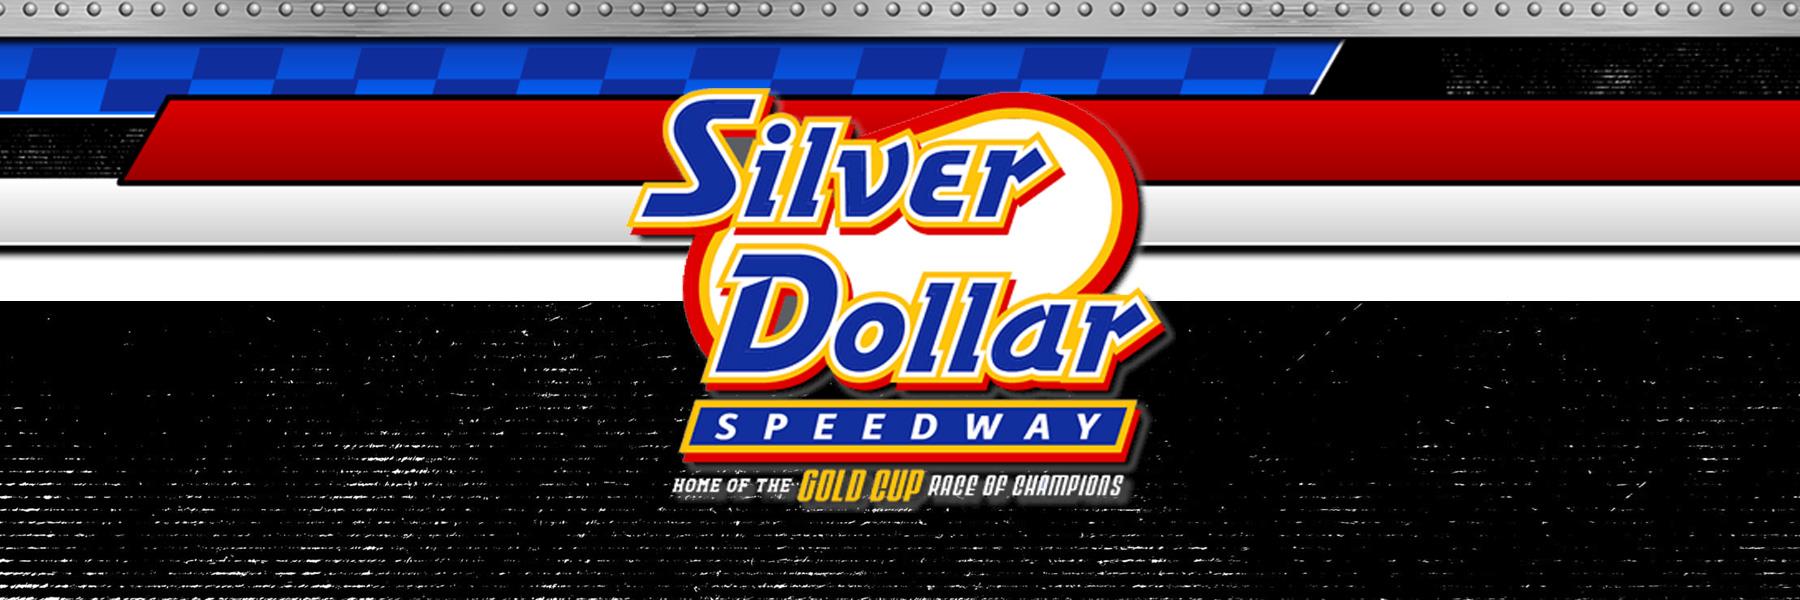 9/10/2022 - Silver Dollar Speedway